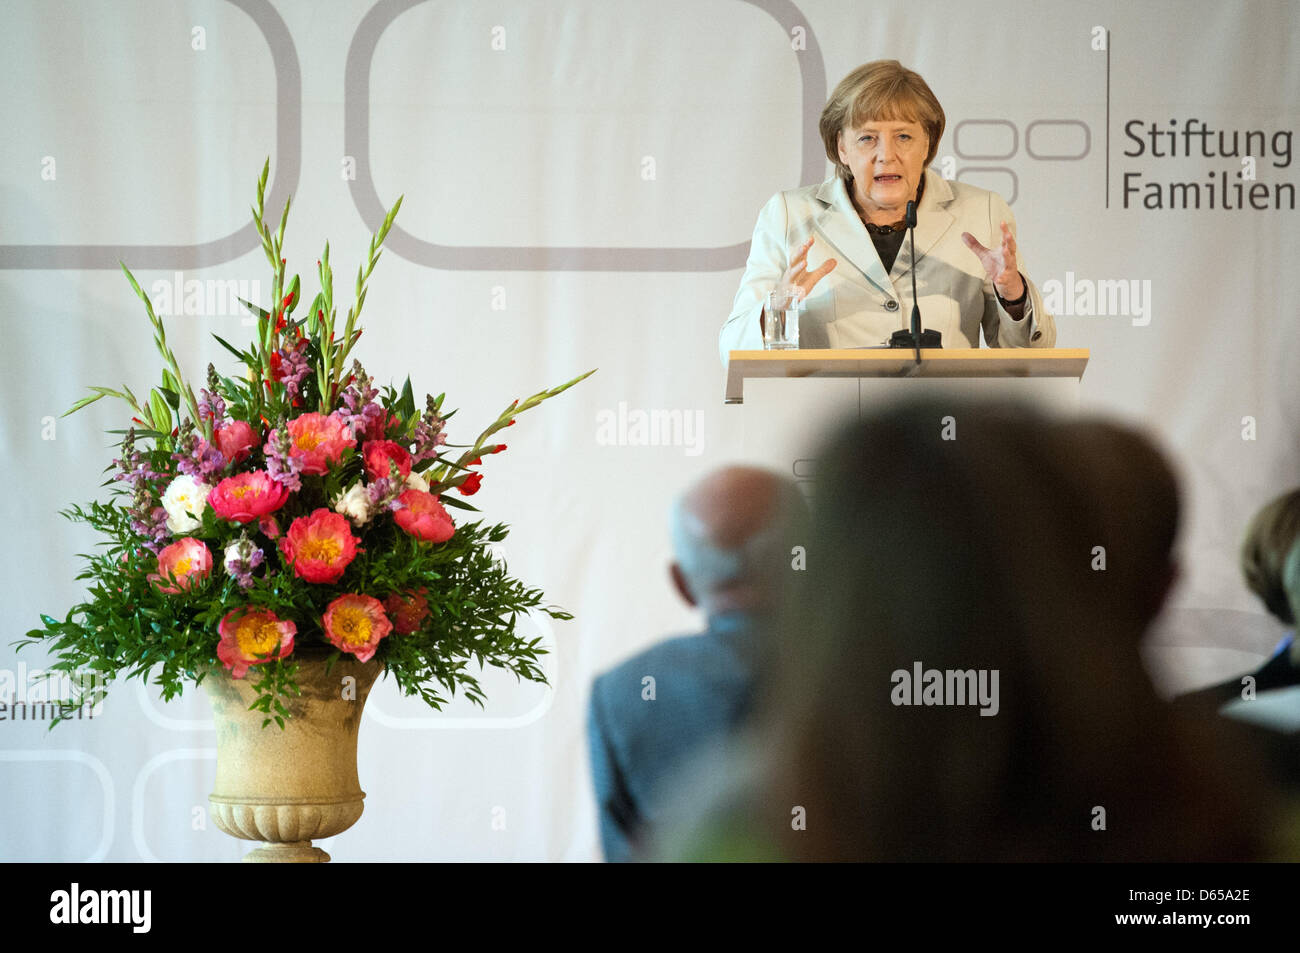 Bundeskanzlerin Angela Merkel nimmt Teil am Tag der Familienbetriebe in Berlin, Deutschland, 15. Juni 2012. Die große Vielfalt der Familienunternehmen zählt zu Deutschlands Vorteile als Wirtschaftsstandort Merkel sagt. Foto: Maurizio Gambarini Stockfoto